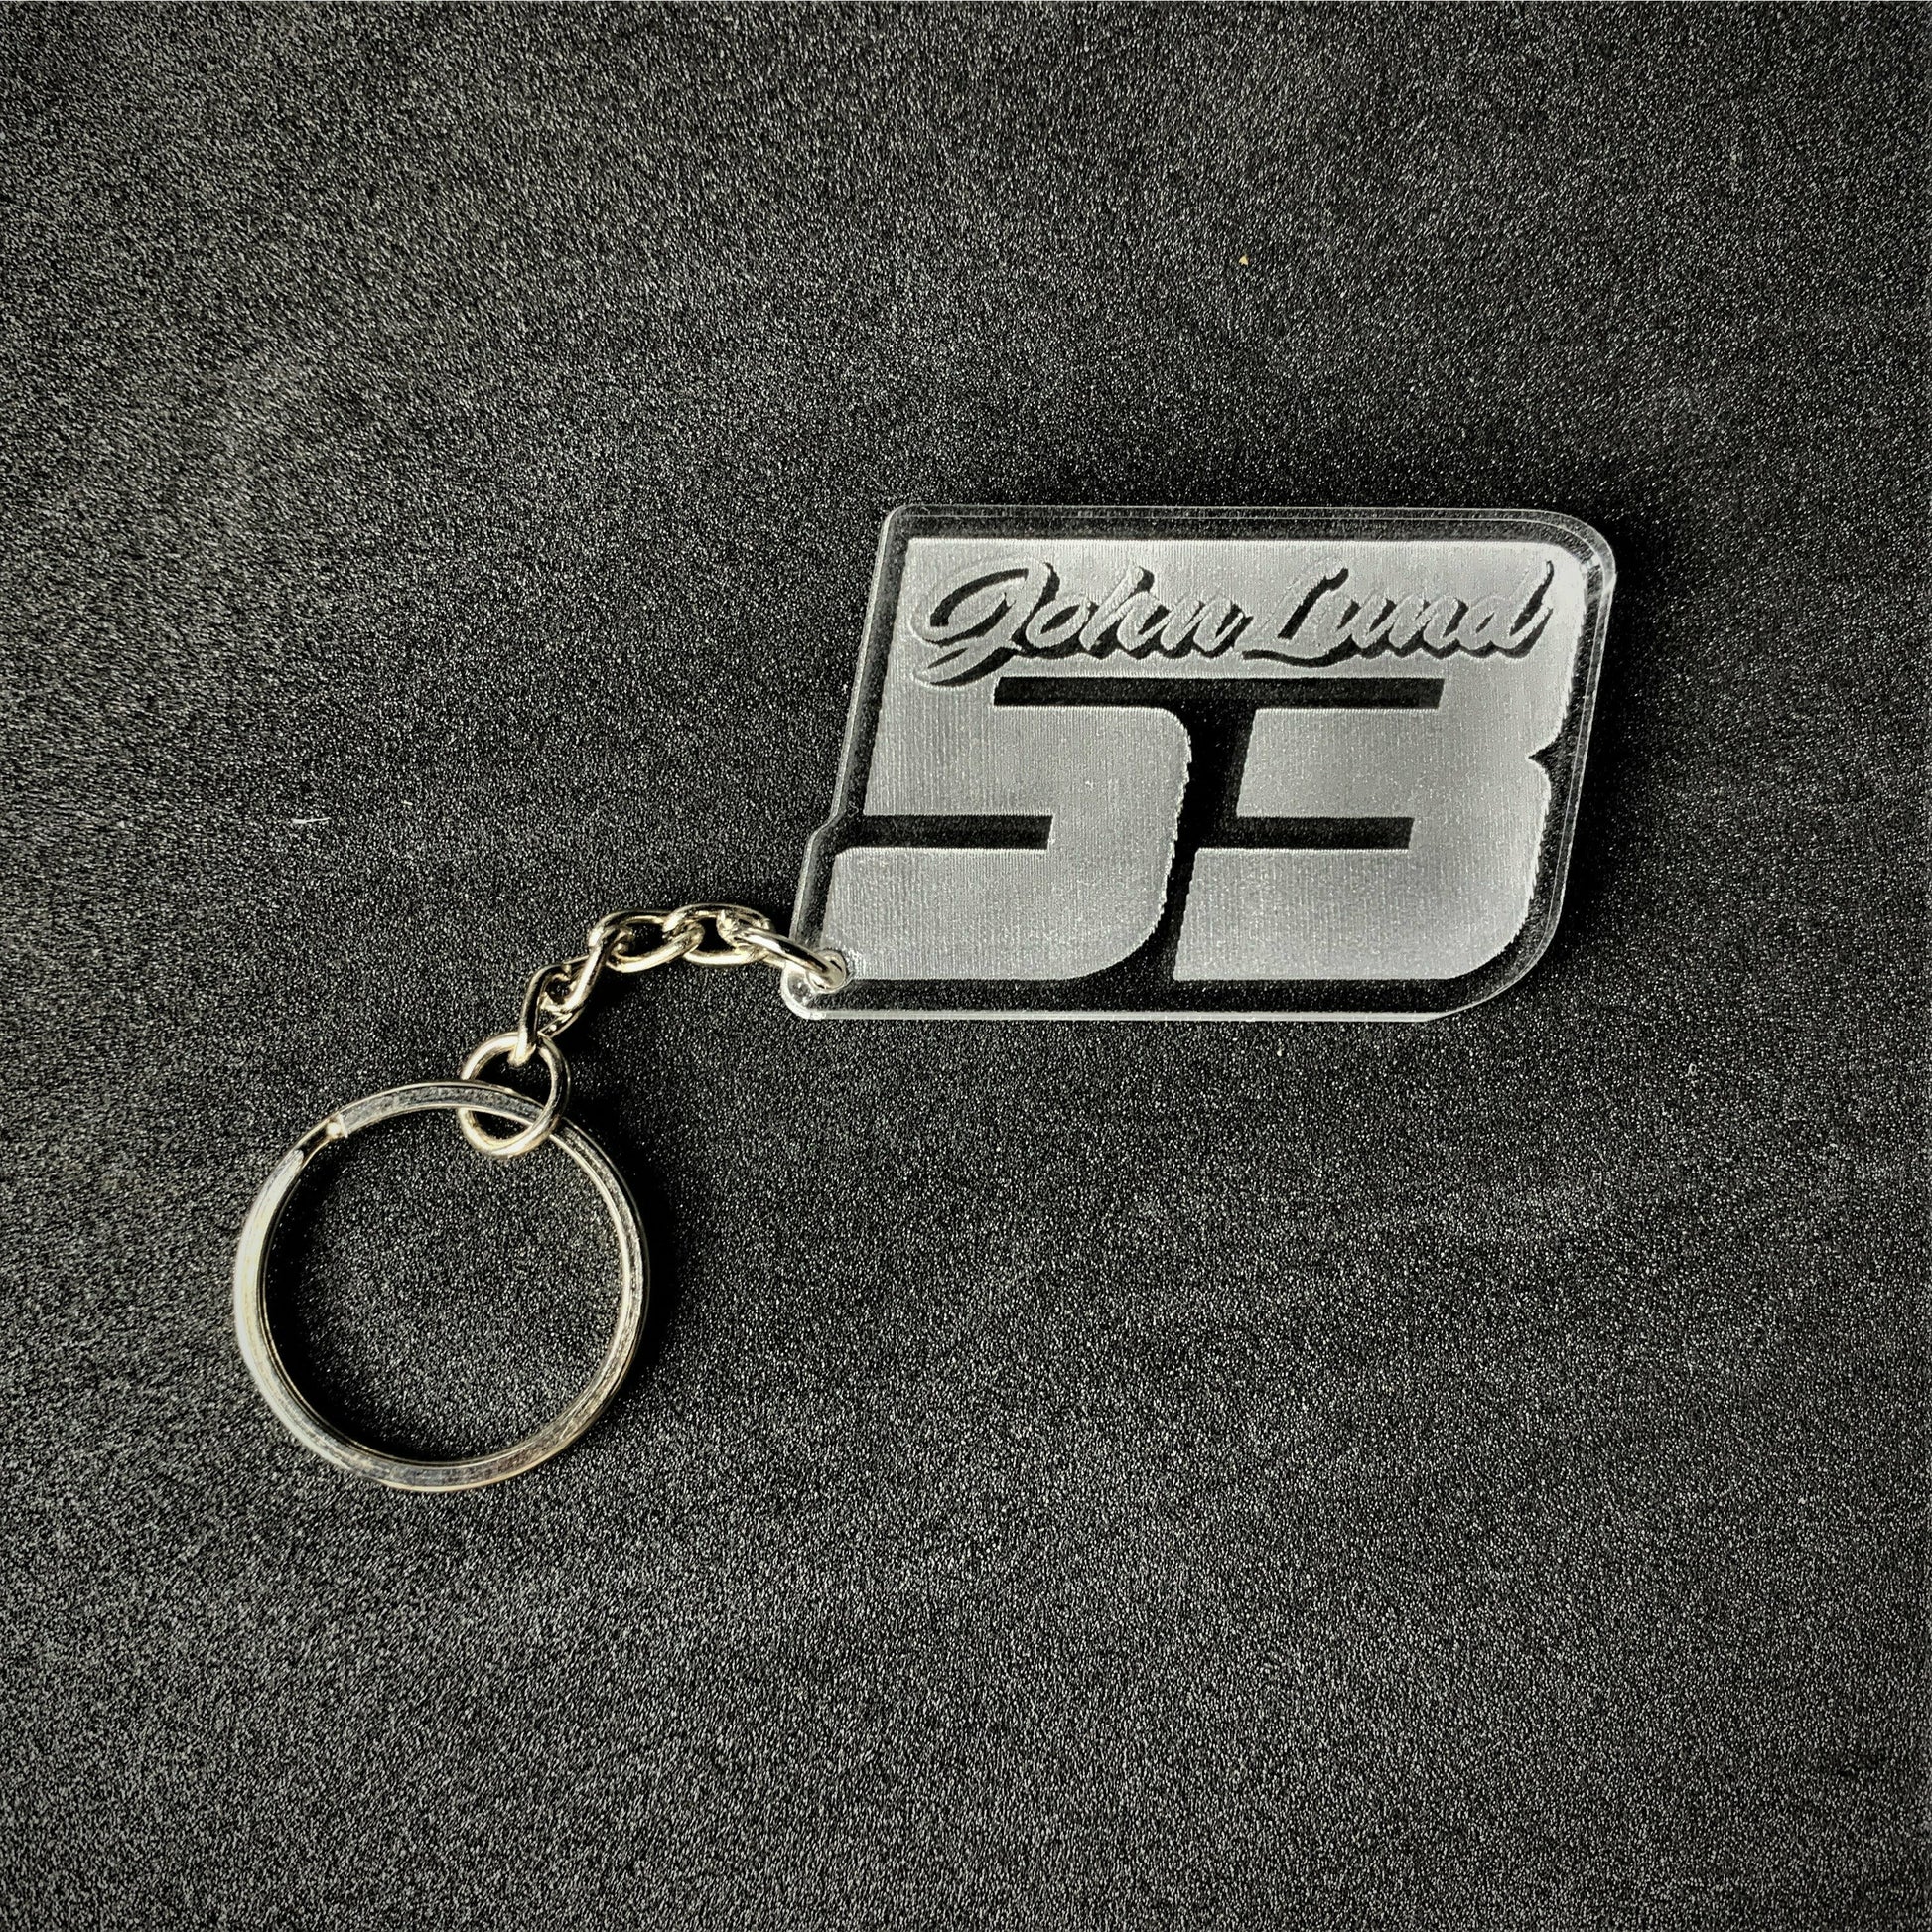 #53 John Lund Key Ring - Key Ring - Stock Car & Banger Toy Tracks